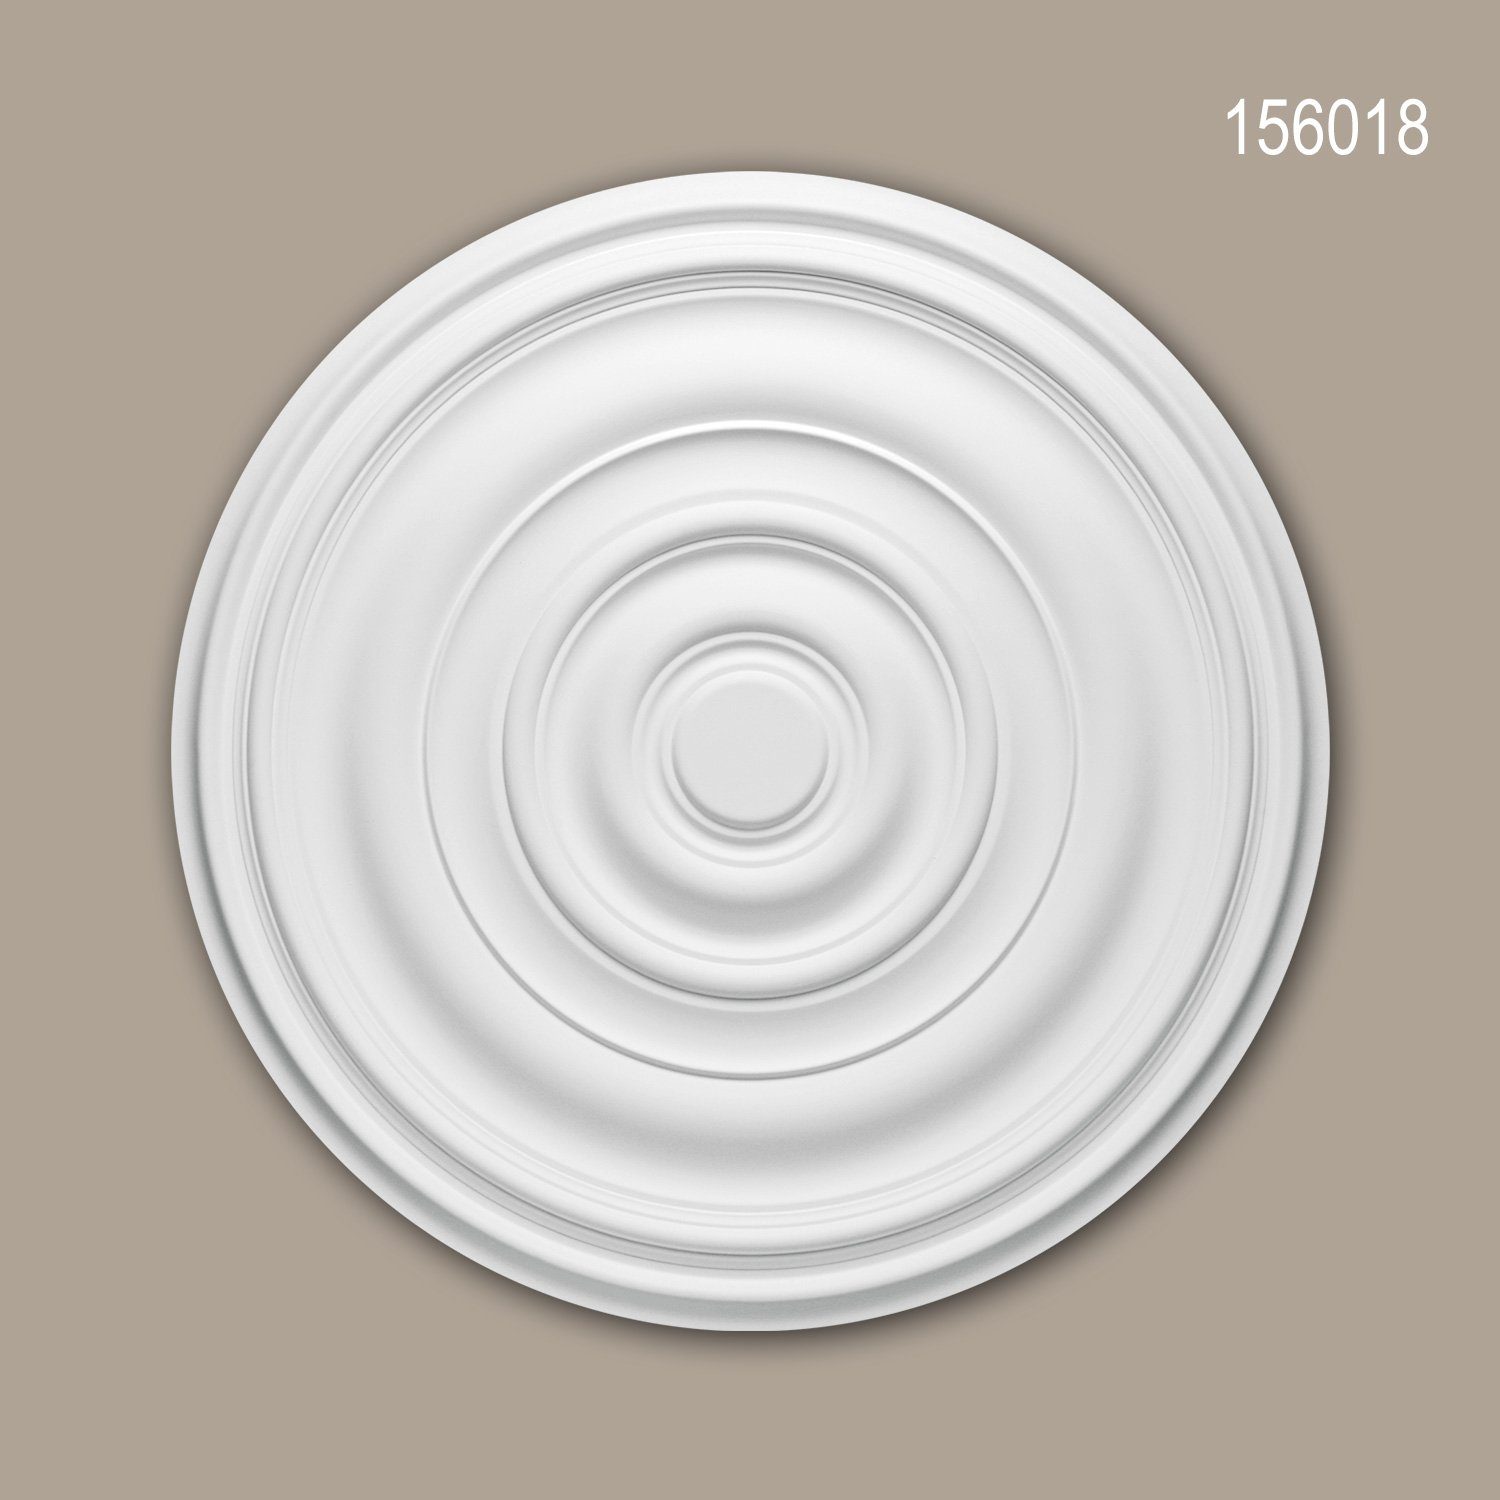 Profhome Decken-Rosette 156018 (Rosette, 1 St., Deckenrosette, Medallion, Stuckrosette, Deckenelement, Zierelement, Durchmesser 74,5 cm), weiß, vorgrundiert, Stil: Zeitlos / Klassisch